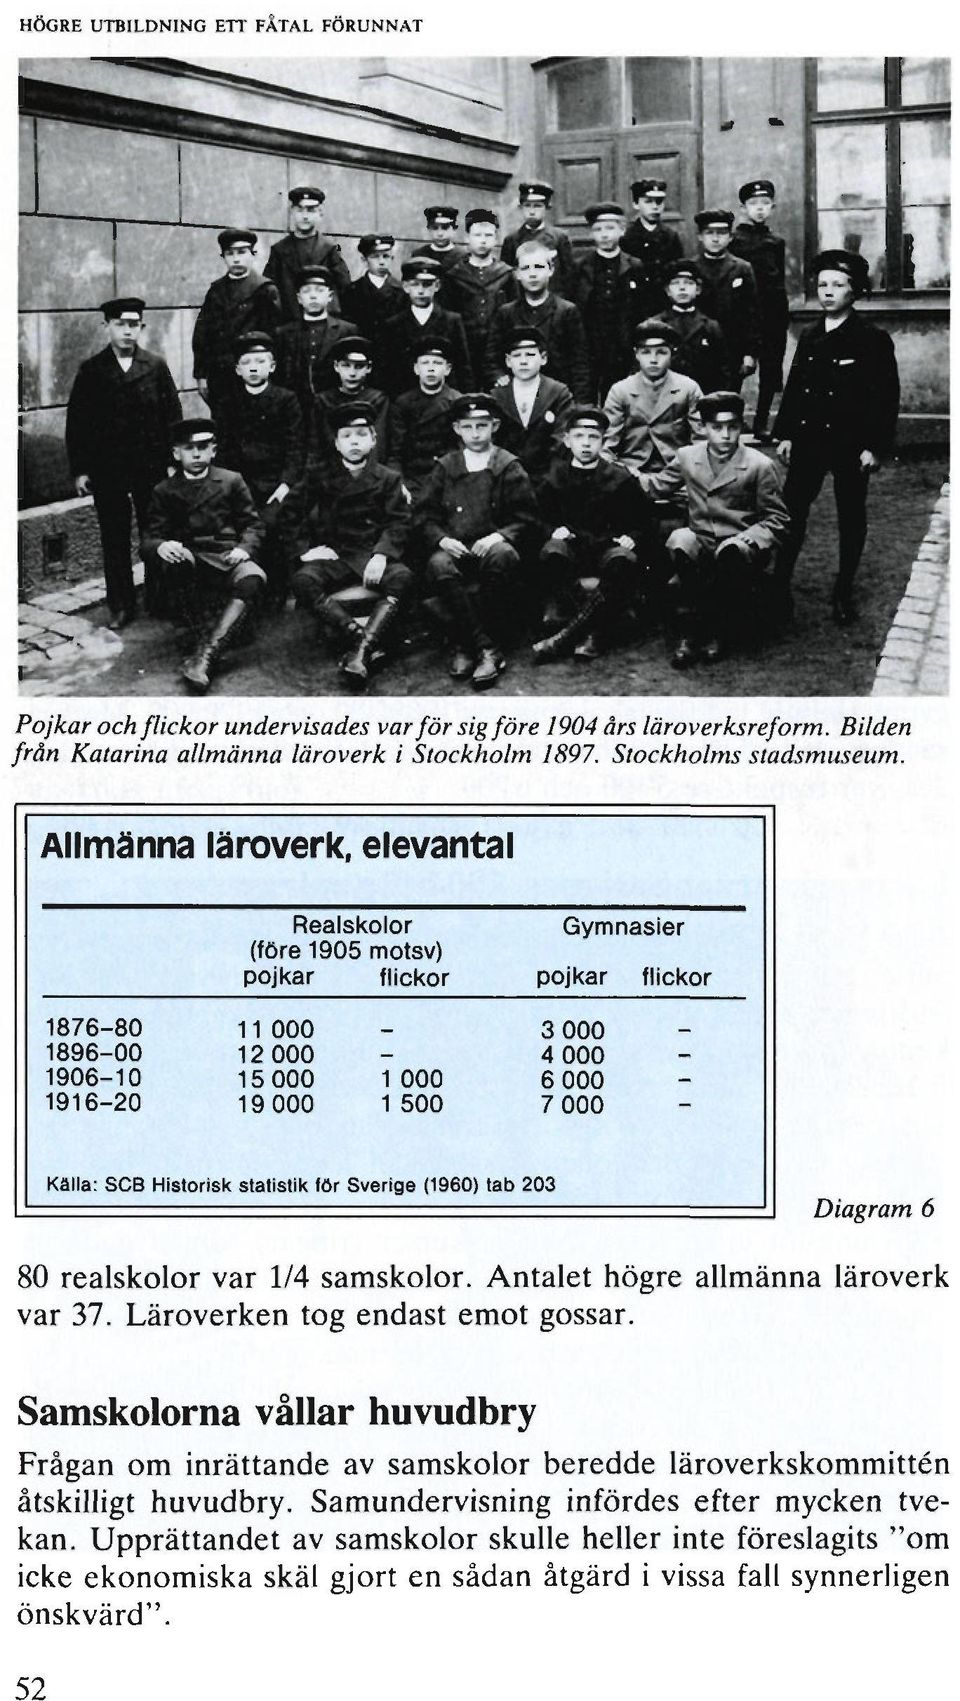 Källa: SCB Historisk statistik för Sverige (1960) tab 203 Diagram 6 80 realskolor var 1/4 samskolor. Antalet högre allmänna läroverk var 37. Läroverken tog endast emot gossar.